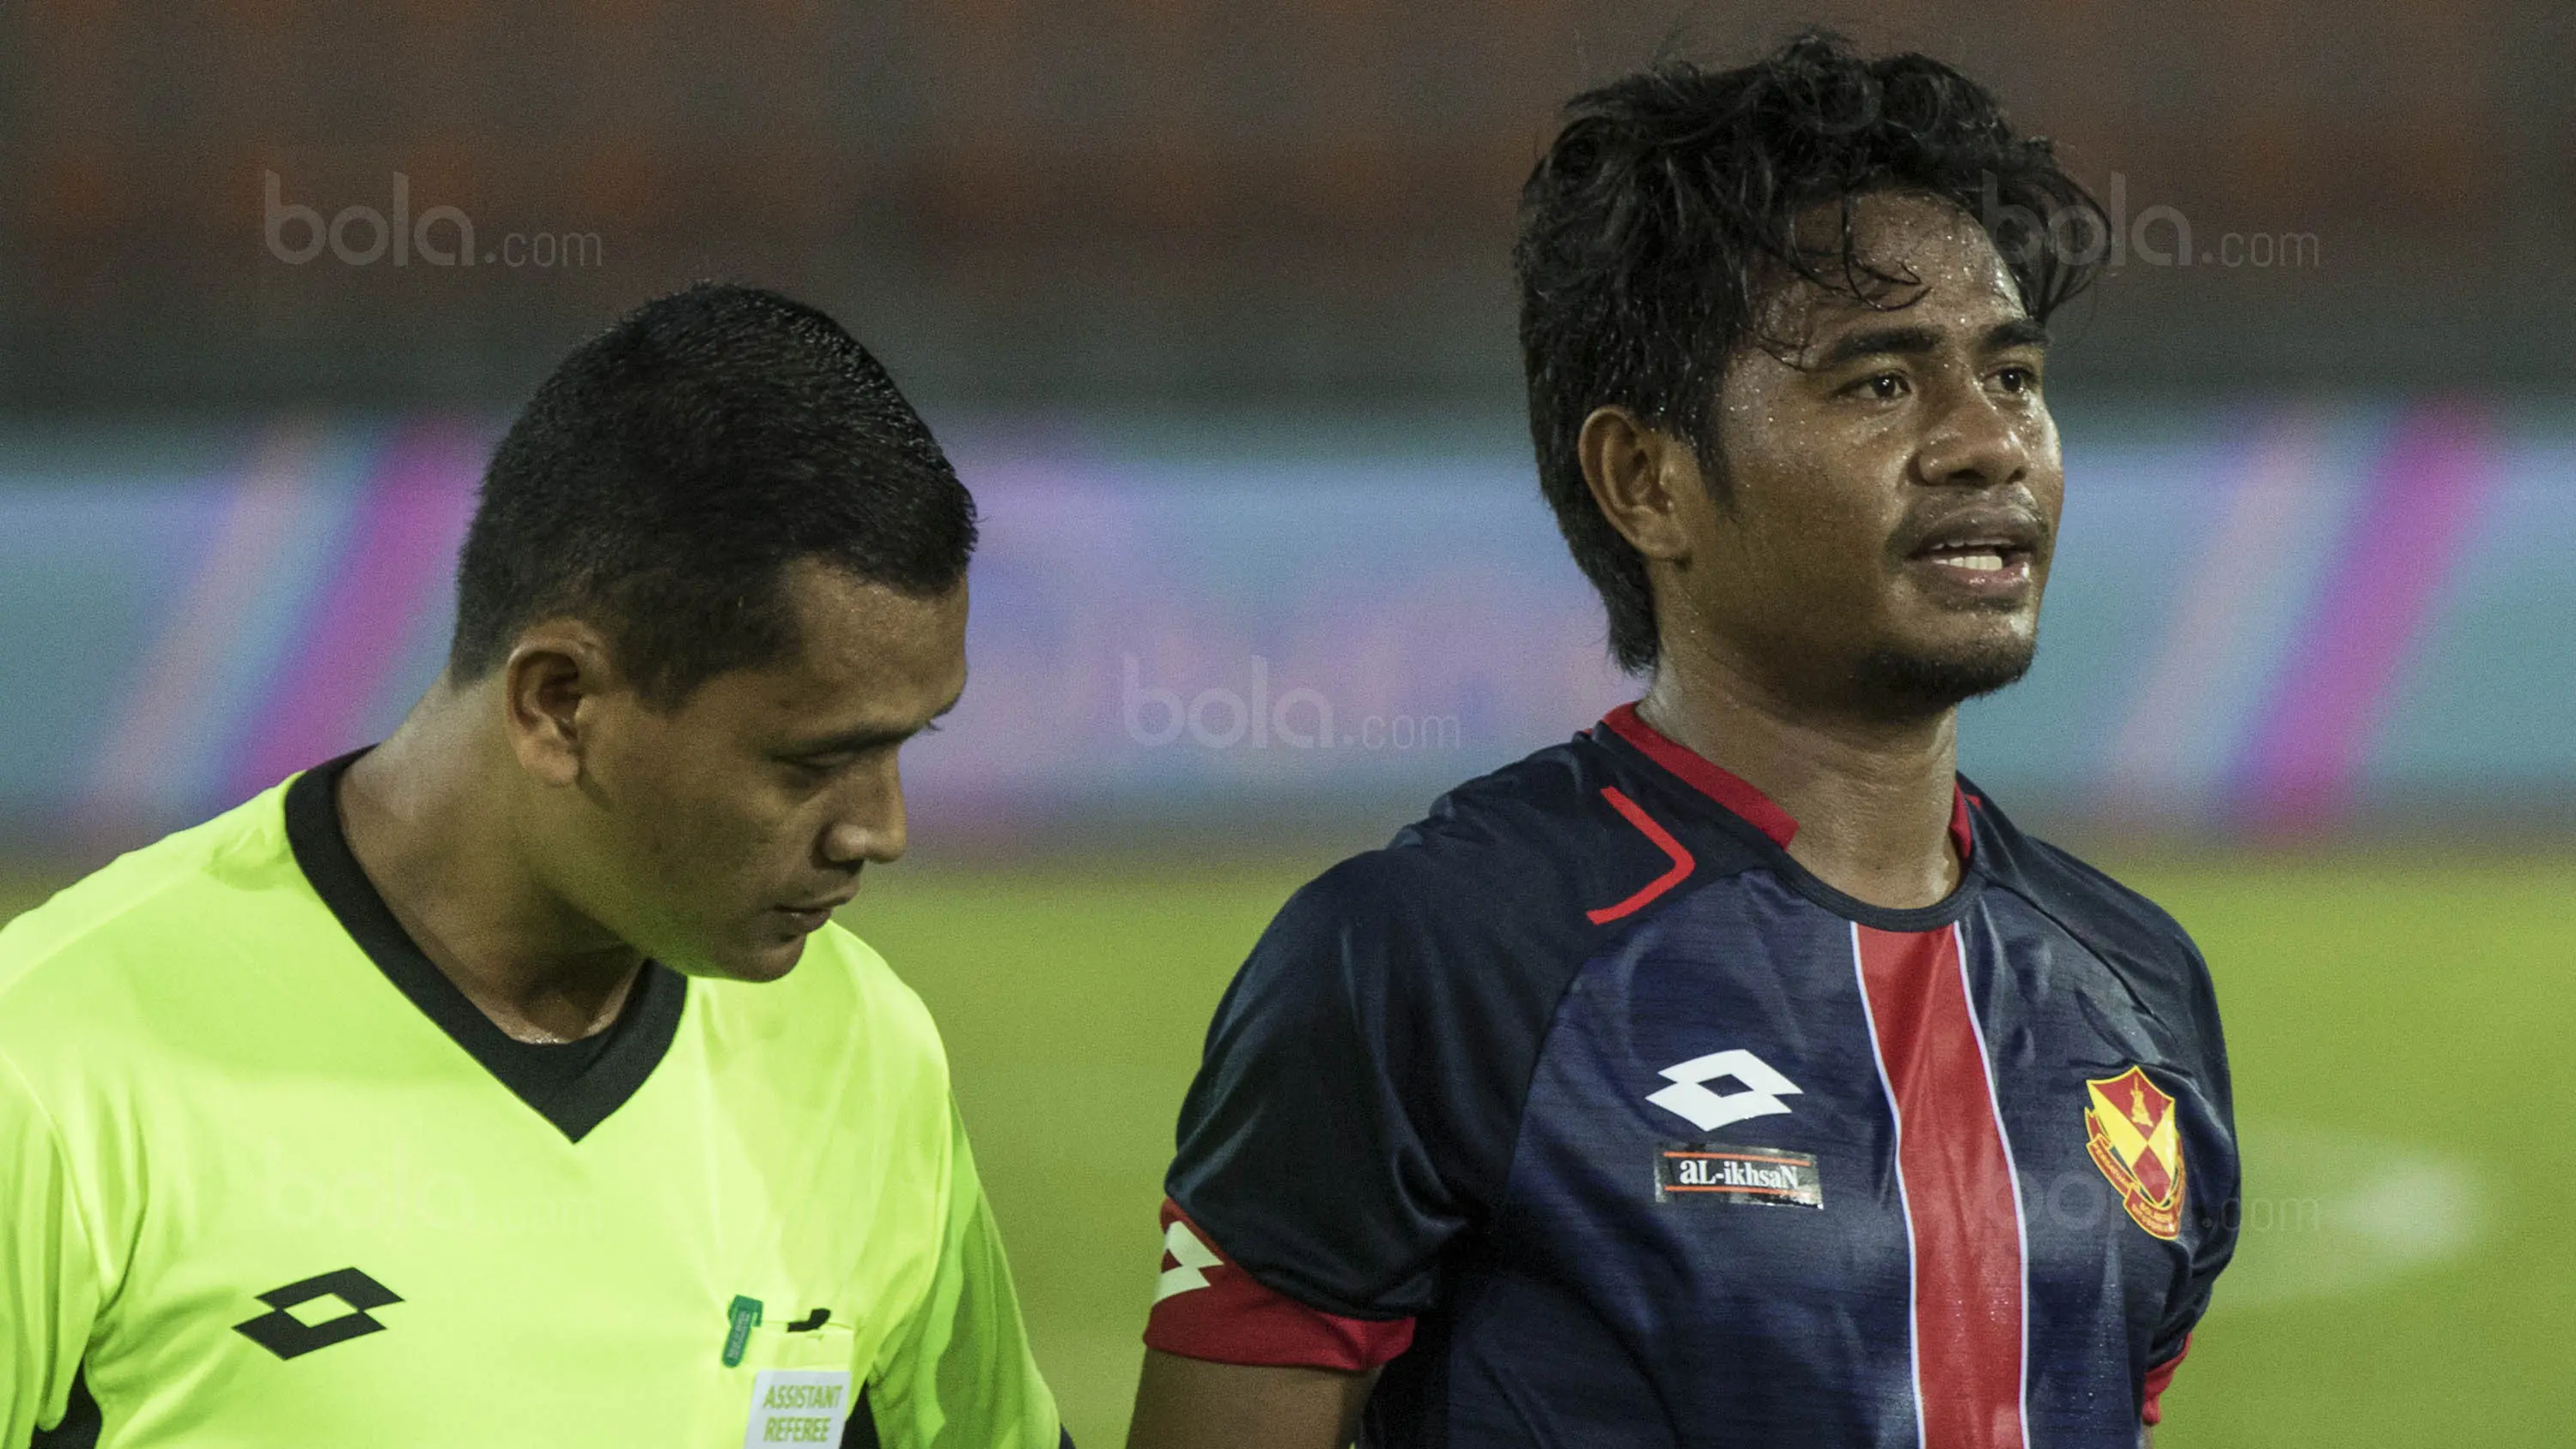 Gelandang Selangor FA, Ilham Udin, saat melawan Kuala Lumpur FA pada laga Liga Super Malaysia di Stadion Kuala Lumpur, Cheras, Minggu (4/2/2018). Kuala Lumpur FA kalah 0-2 dari Selangor FA. (Bola.com/Vitalis Yogi Trisna)